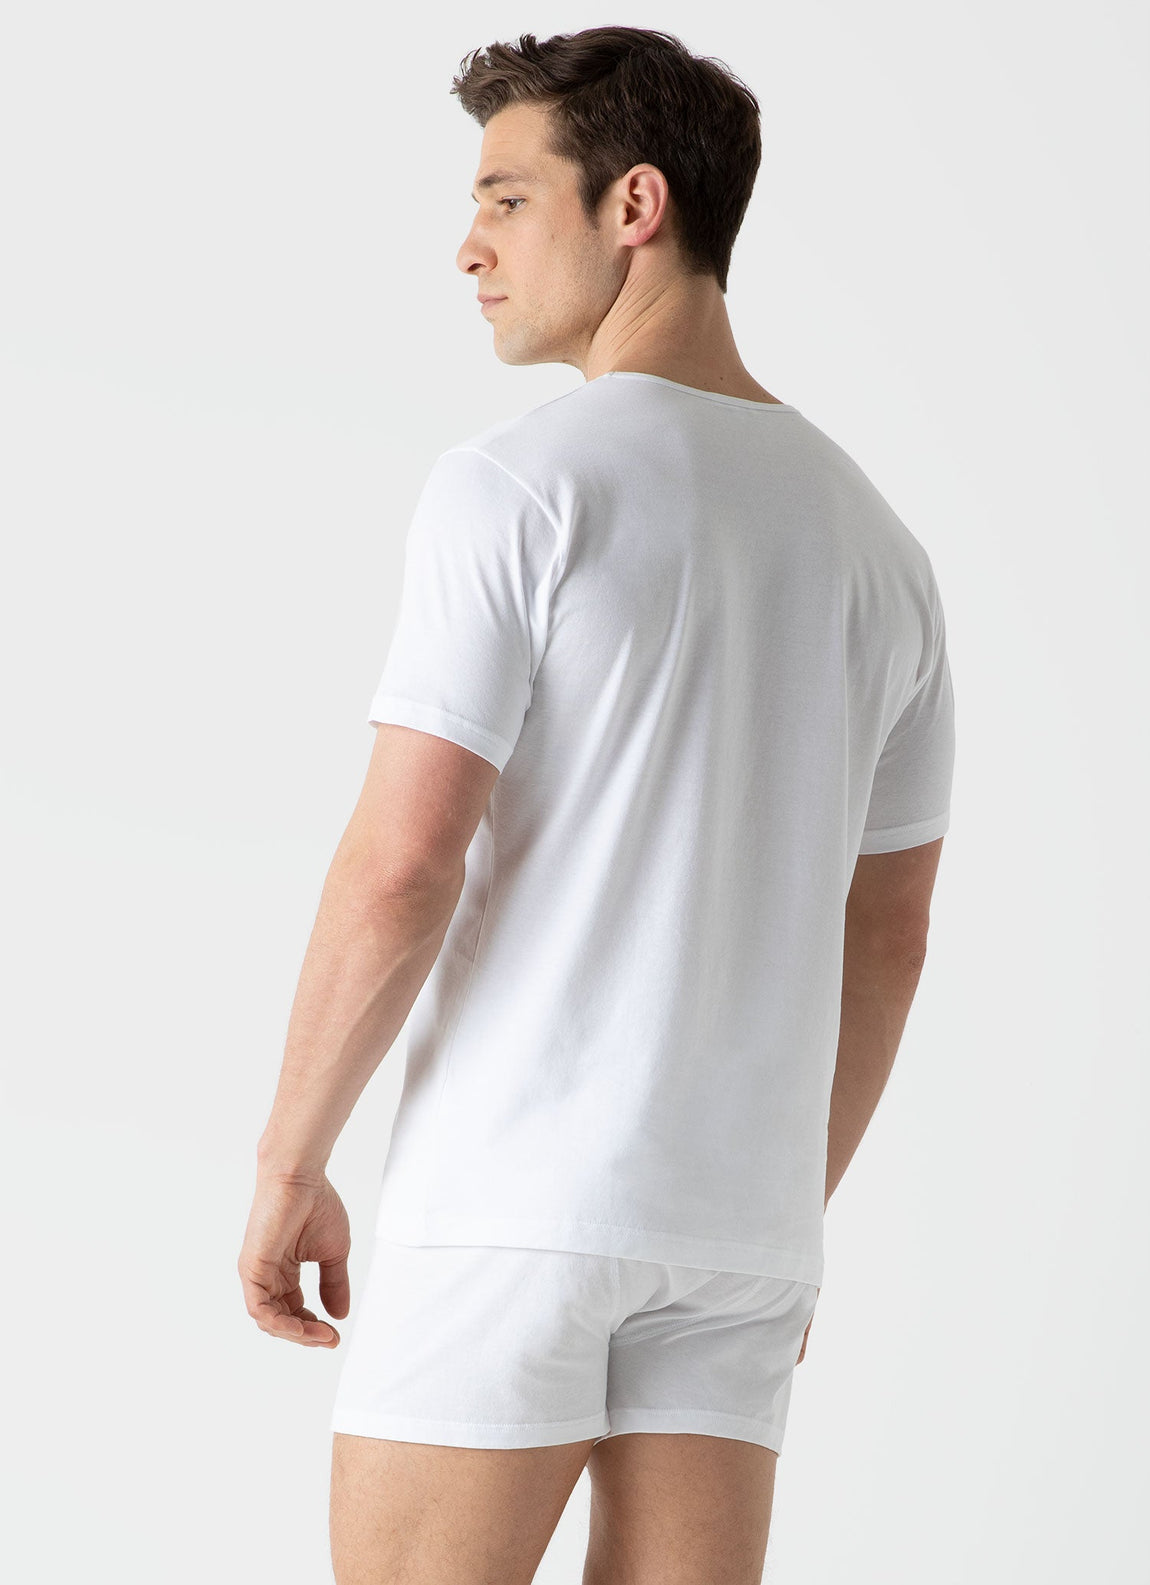 Men's Superfine Cotton Briefs in White